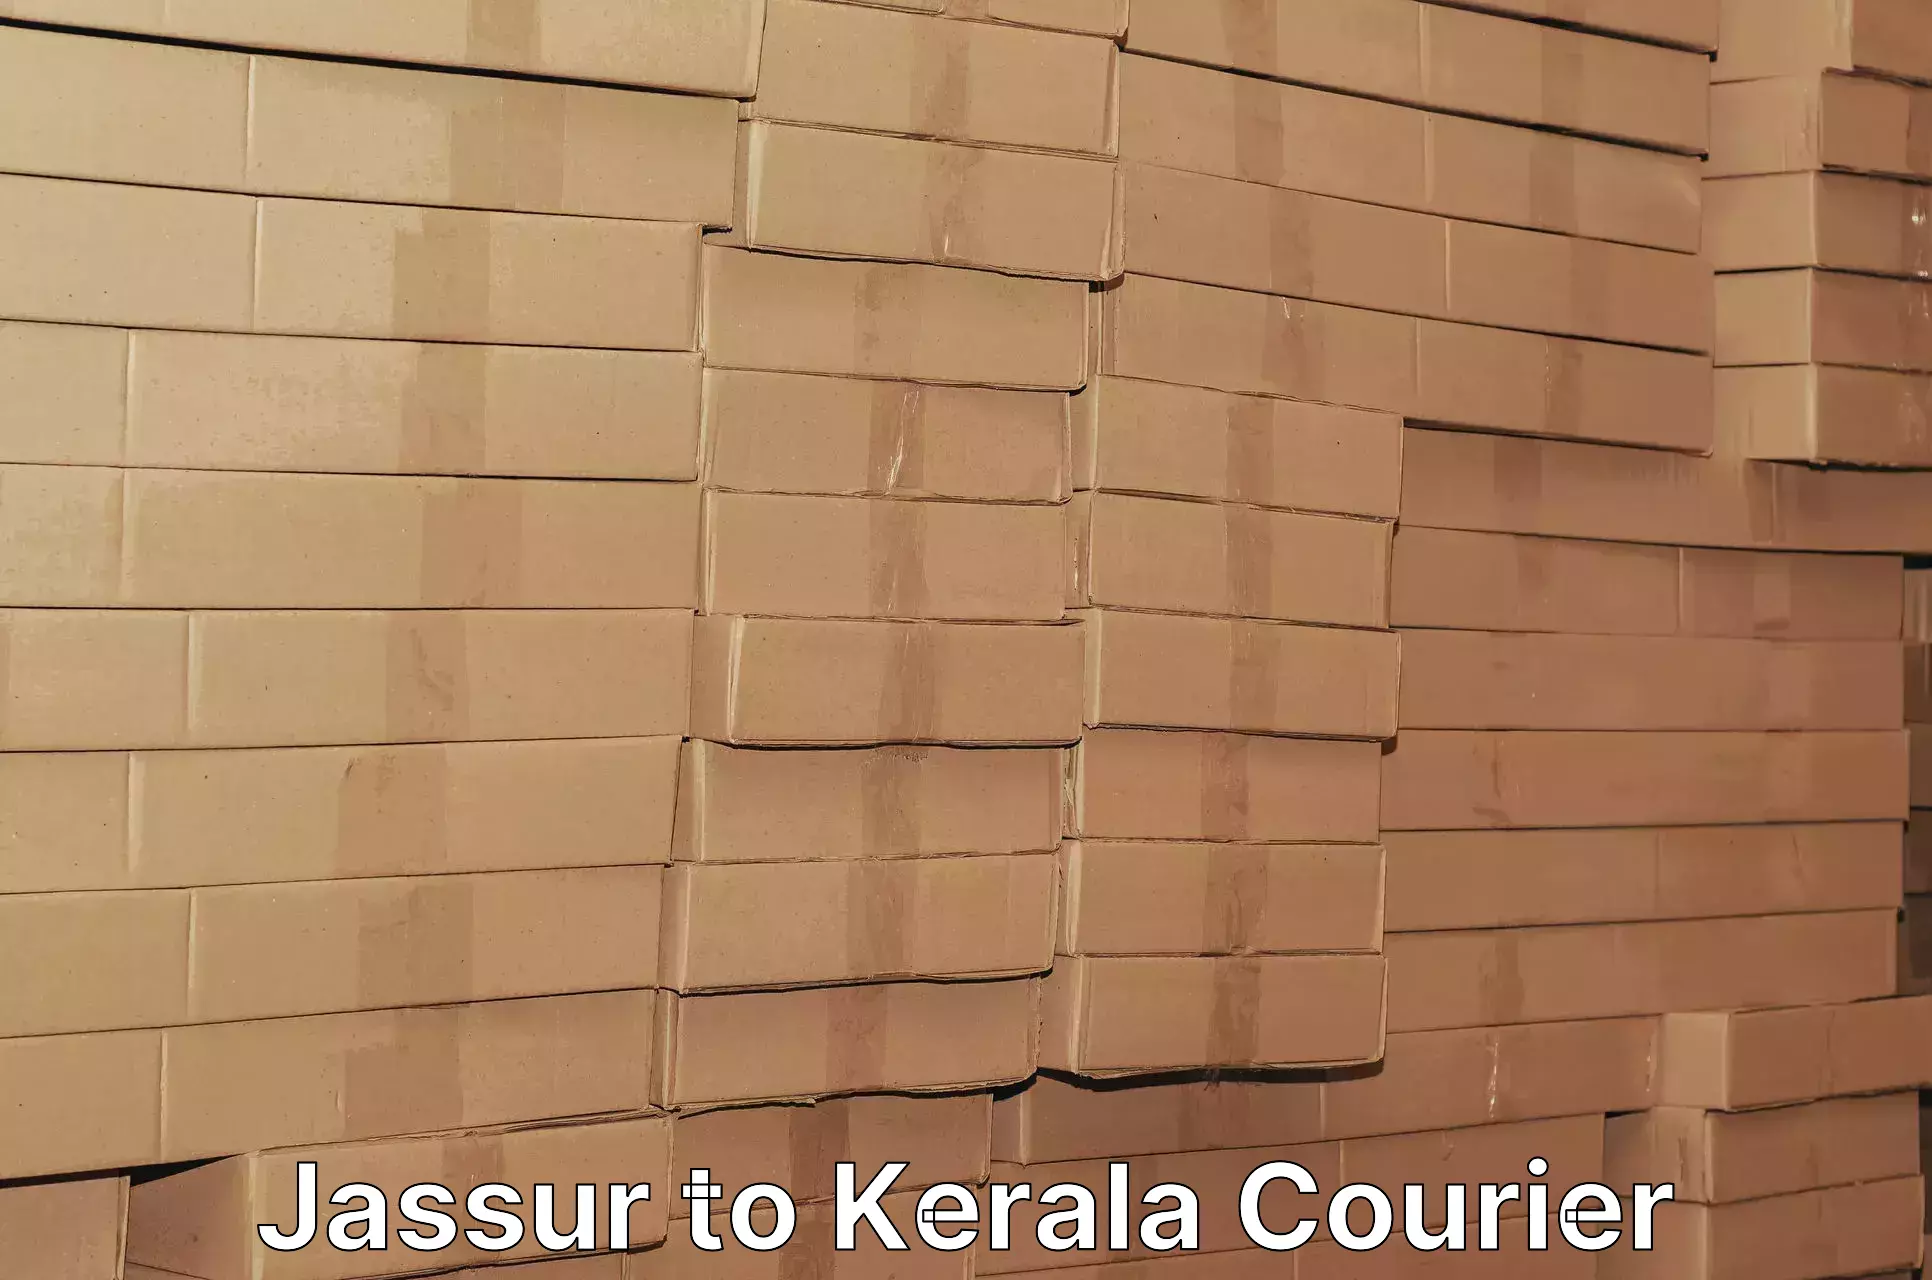 Ocean freight courier Jassur to Kerala